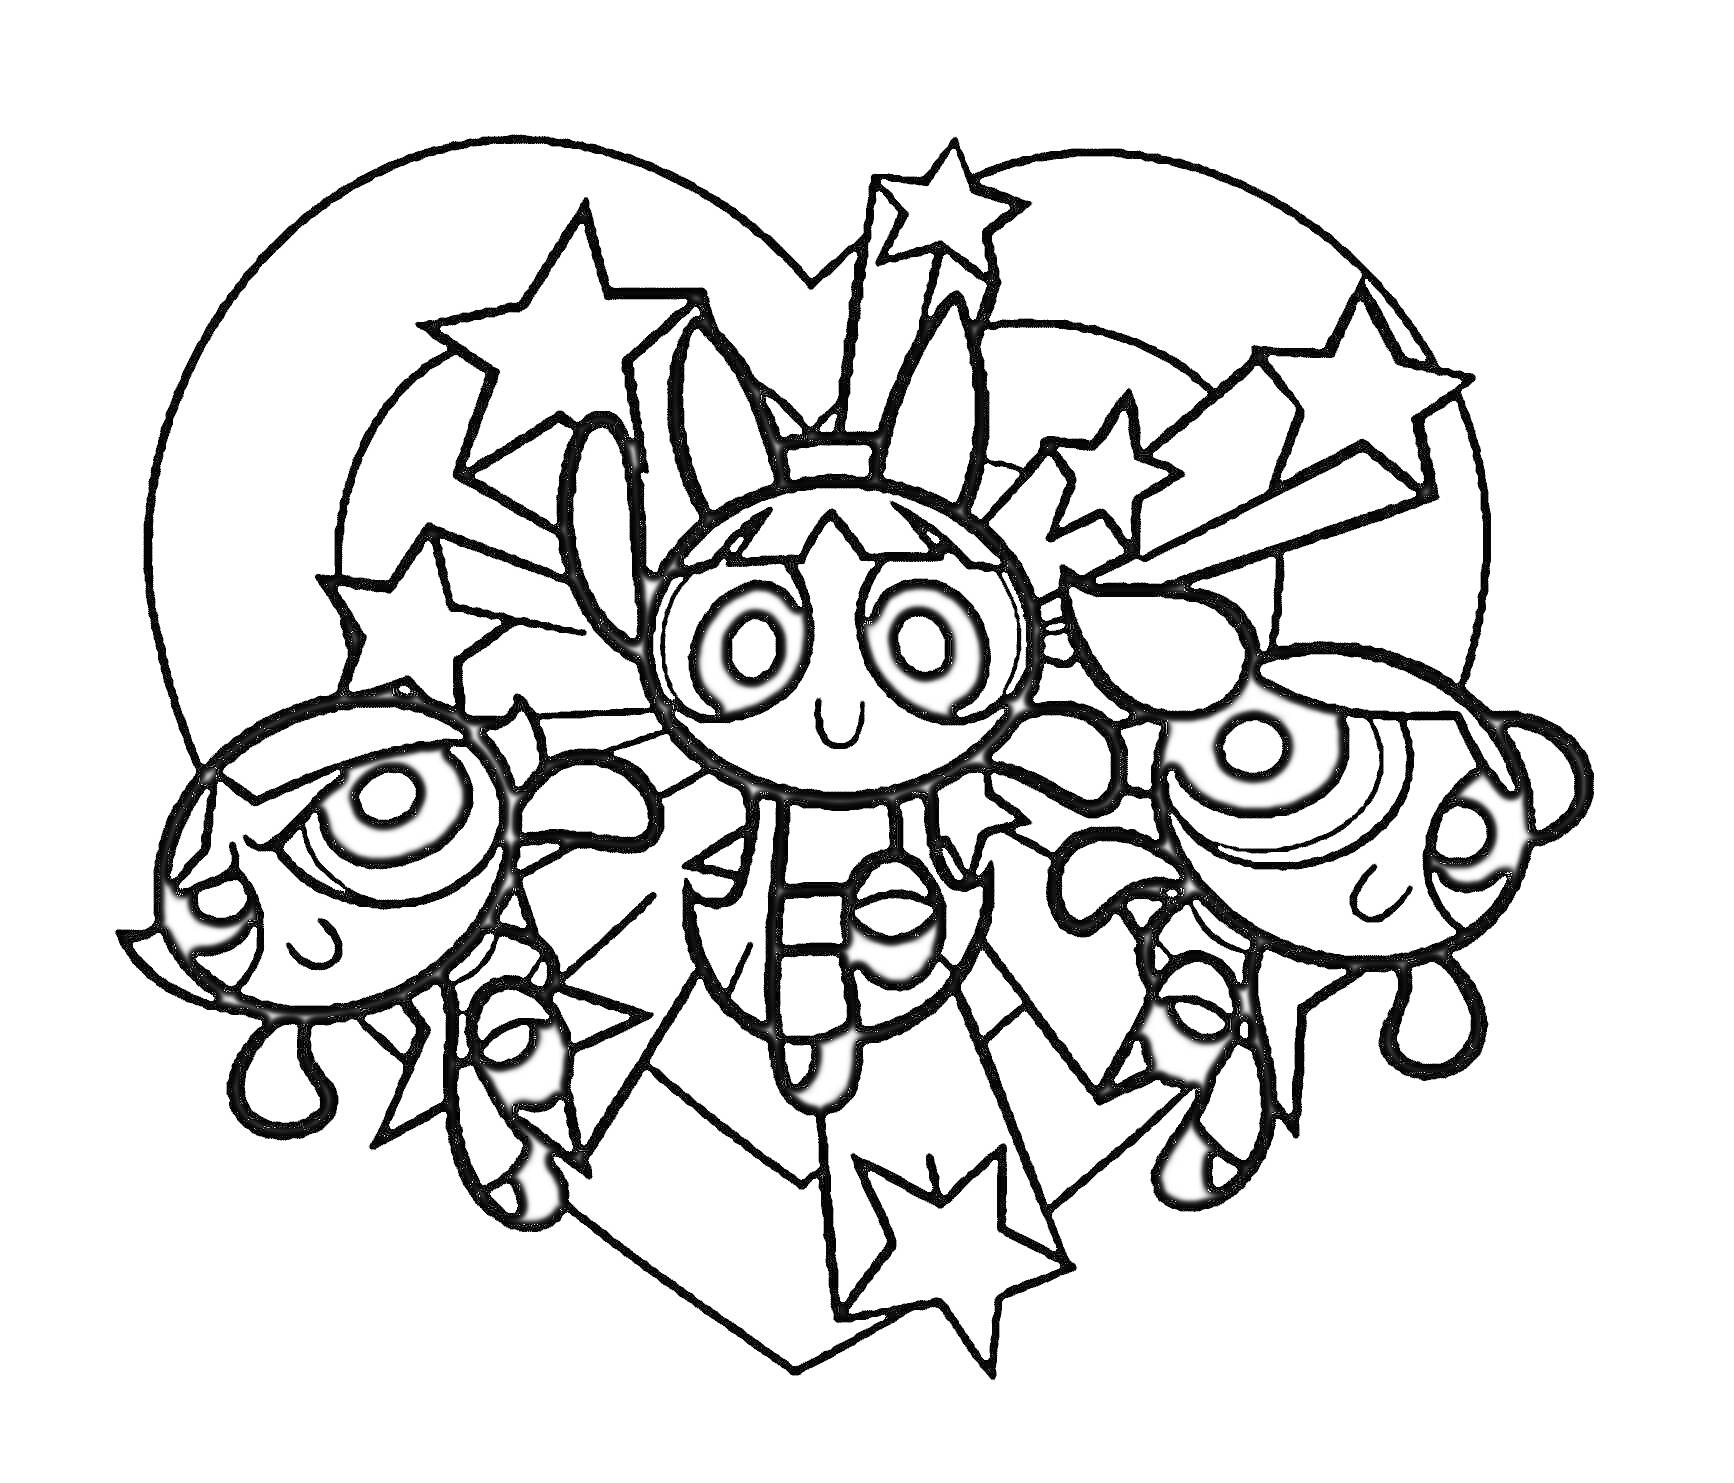 Суперкрошки - три персонажа на фоне звезд и сердца